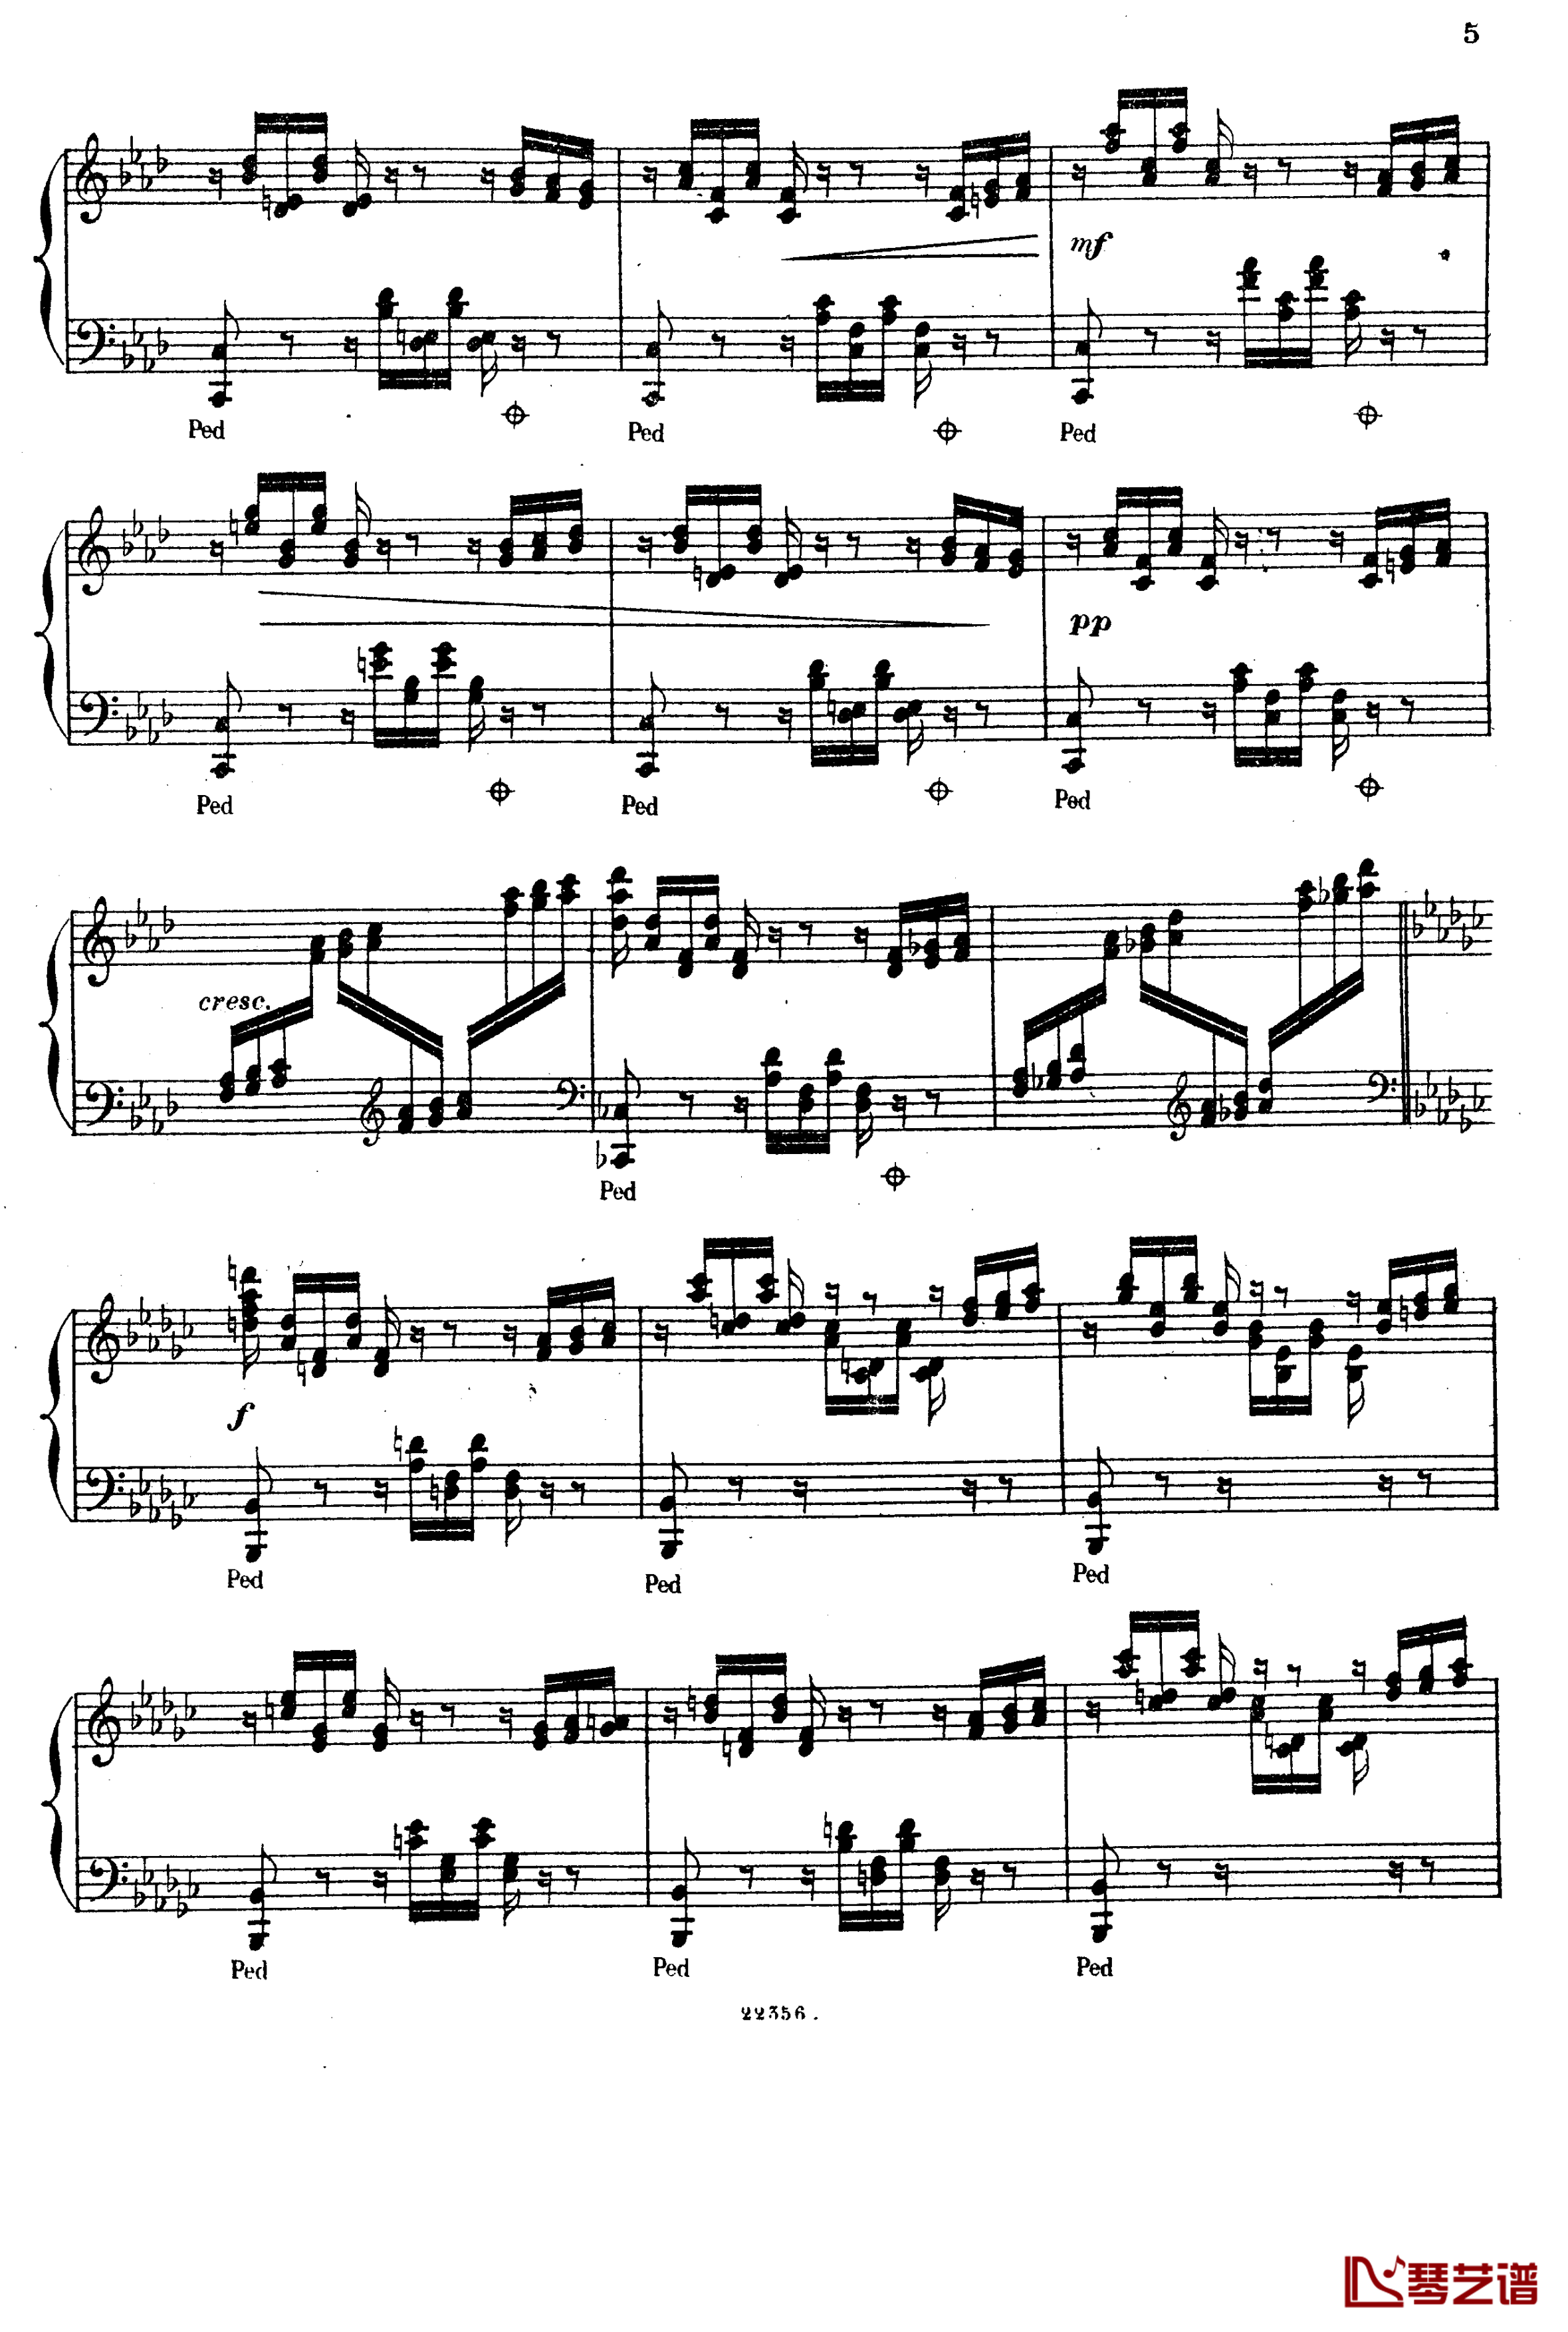  前奏曲与赋格 Op.6钢琴谱-斯甘巴蒂4